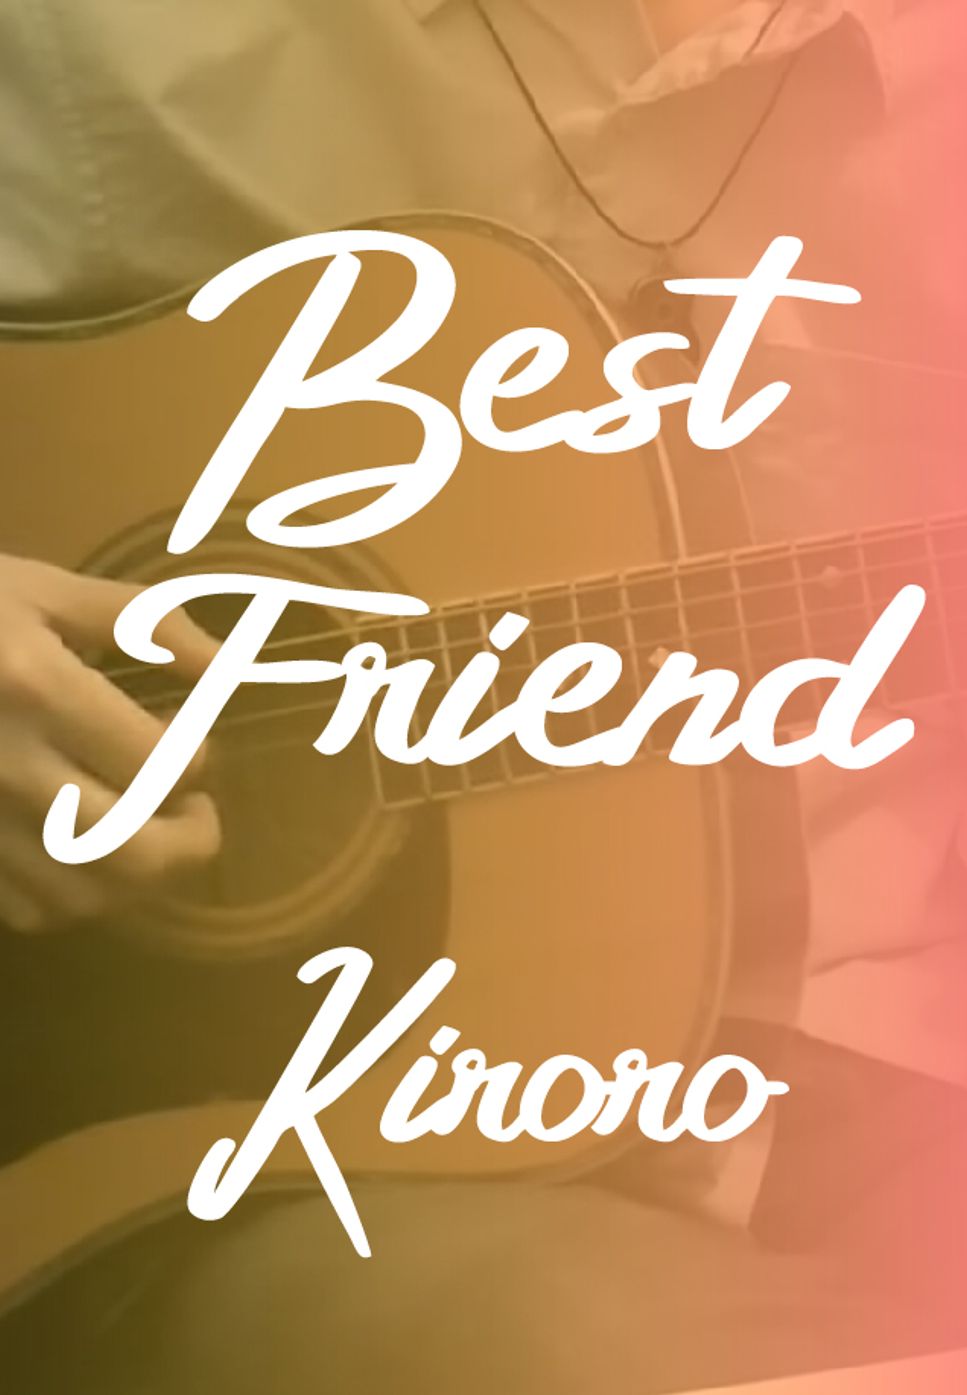 Kiroro - Best Friend (Fingerstyle) by HowMing